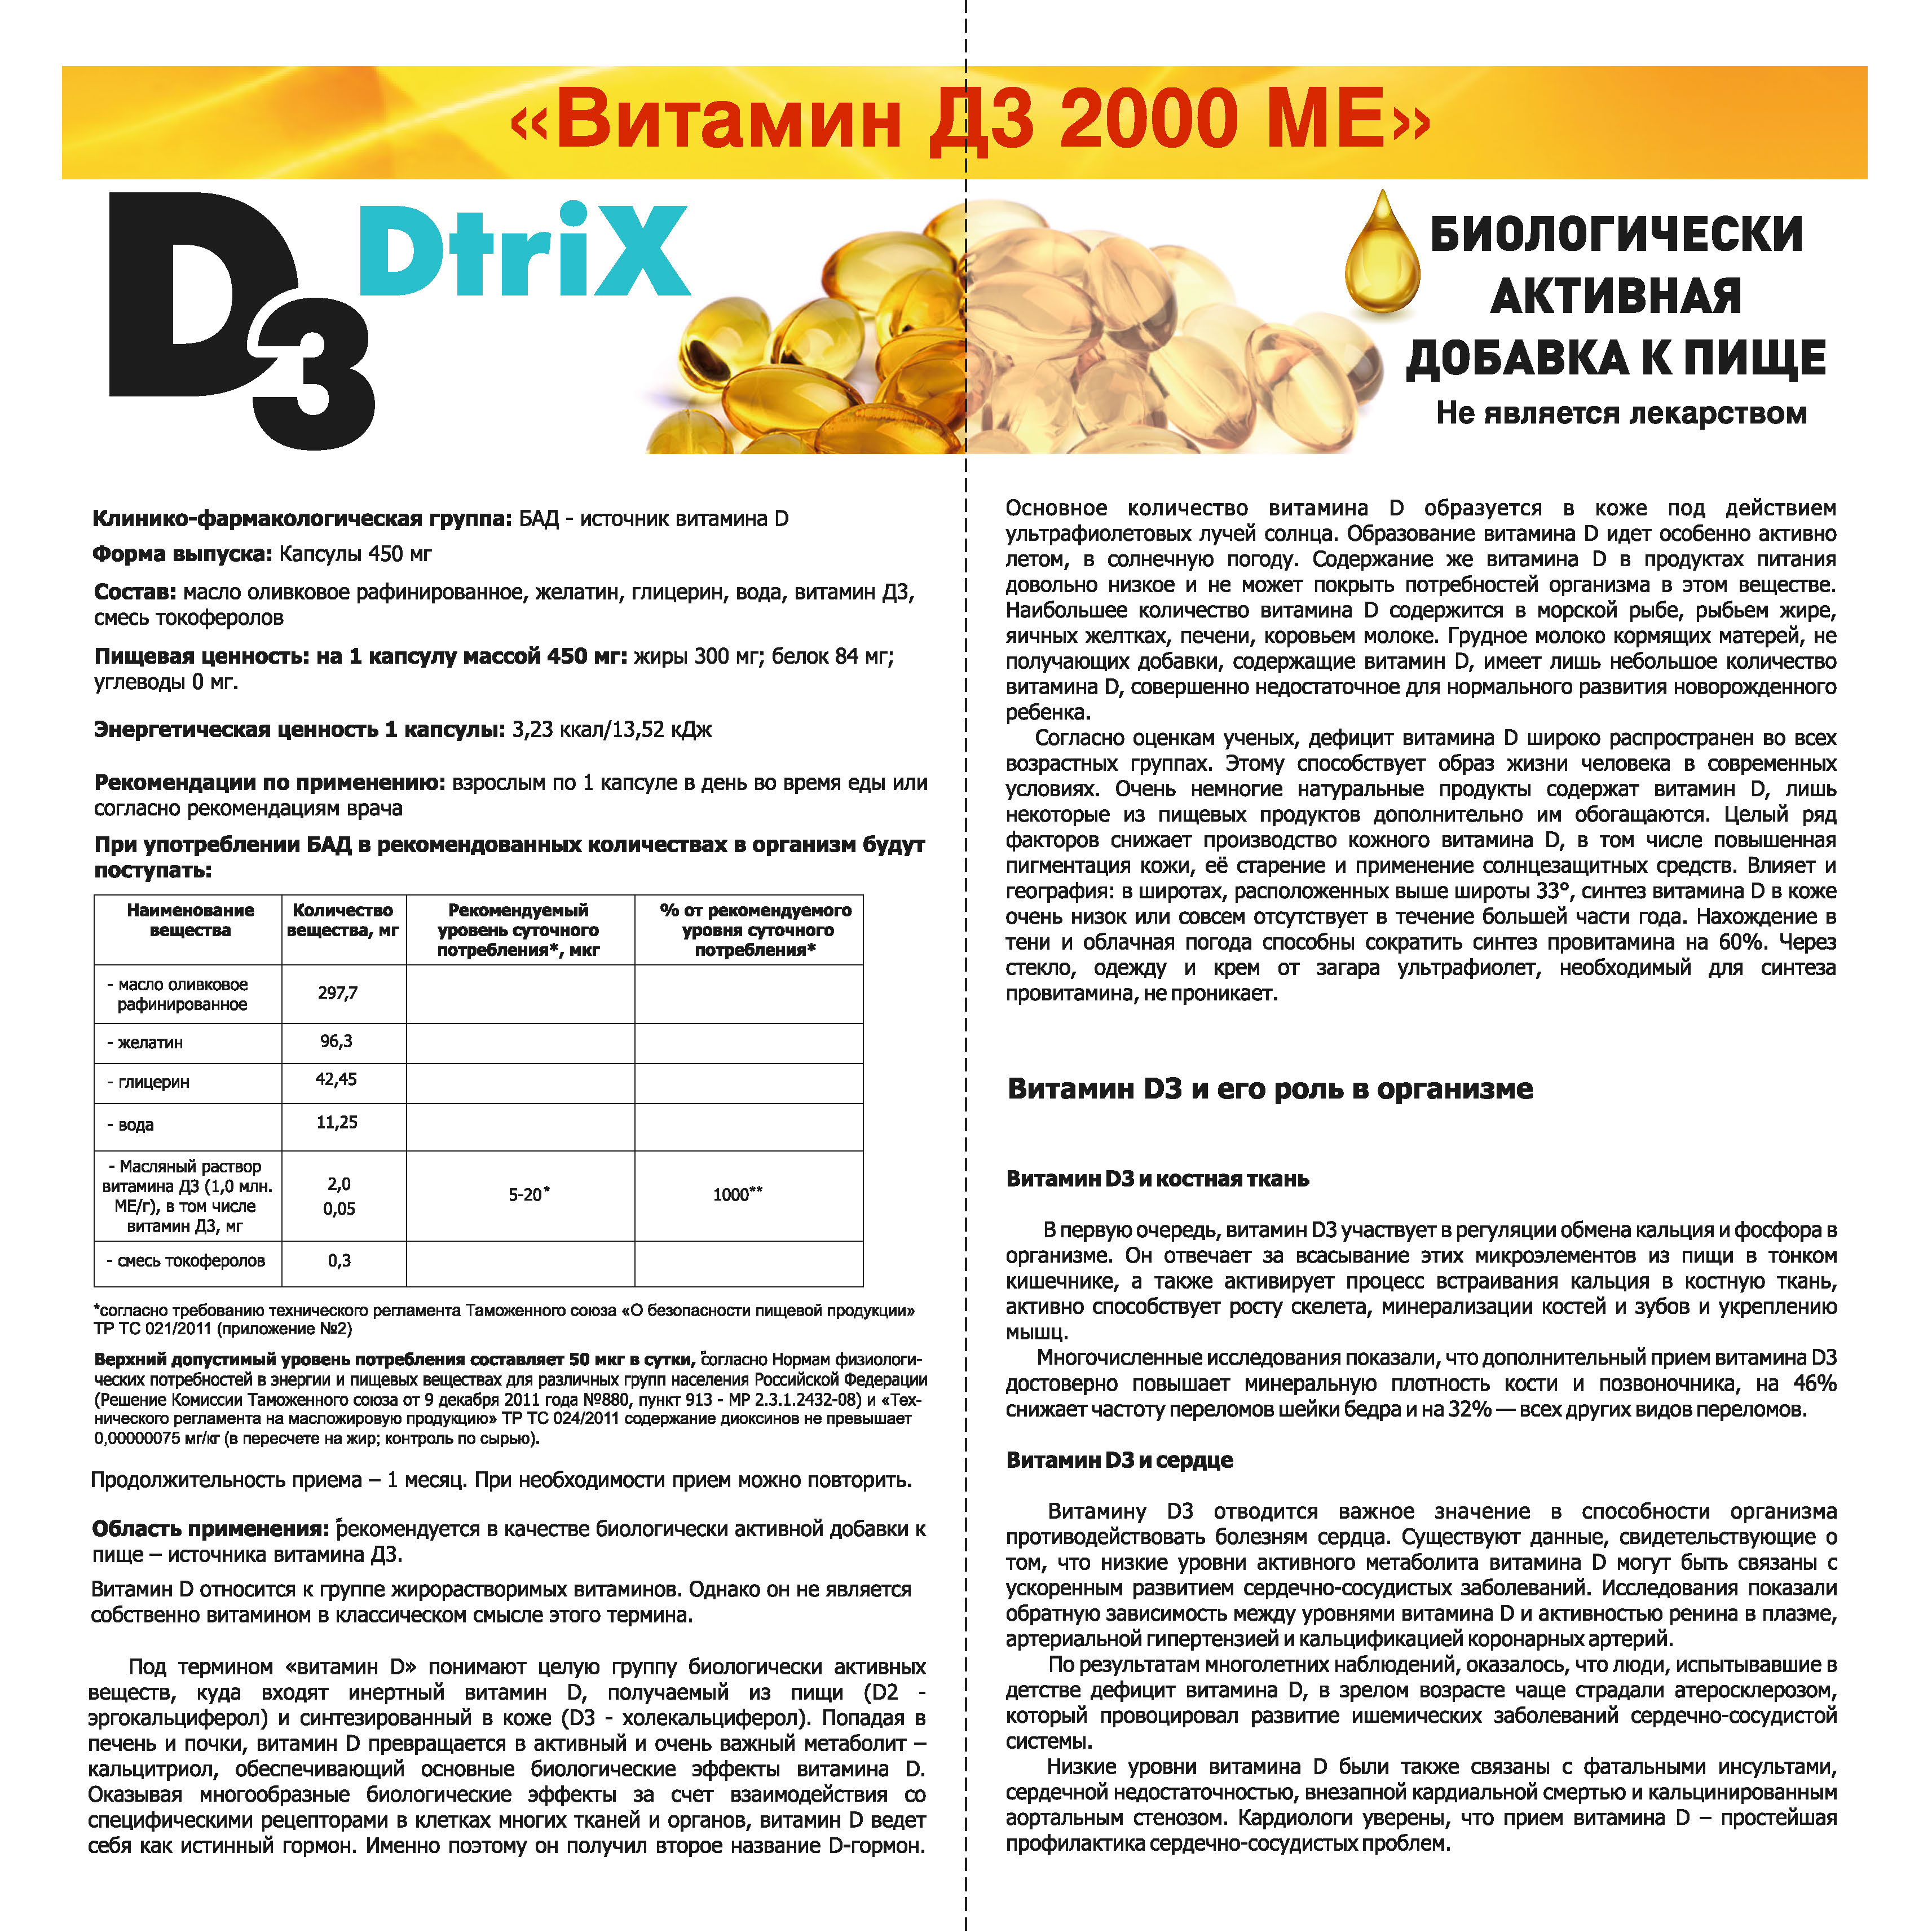 Инструкция по применению vitamin d3. Dtrix d3 витамин 2000. Витамин д 3 капсулы 2000ме 60 капсул. Витамин д3 dtrix/детрикс капсулы 2000ме 450мг 120шт. Дозировка витамина д 3 дозировка 2000 ме.